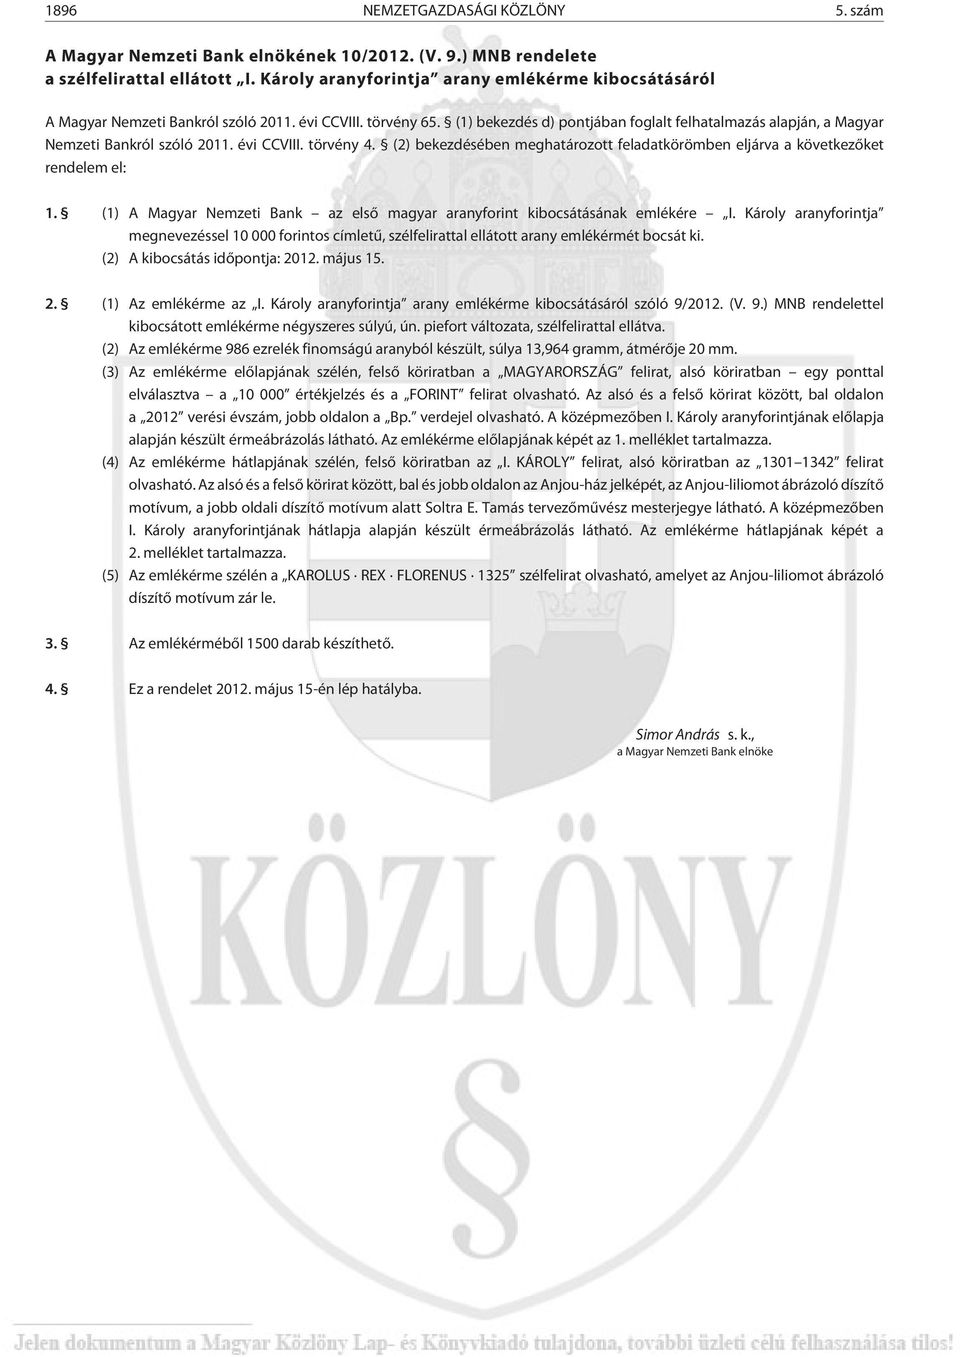 (1) bekezdés d) pontjában foglalt felhatalmazás alapján, a Magyar Nemzeti Bankról szóló 2011. évi CCVIII. törvény 4.